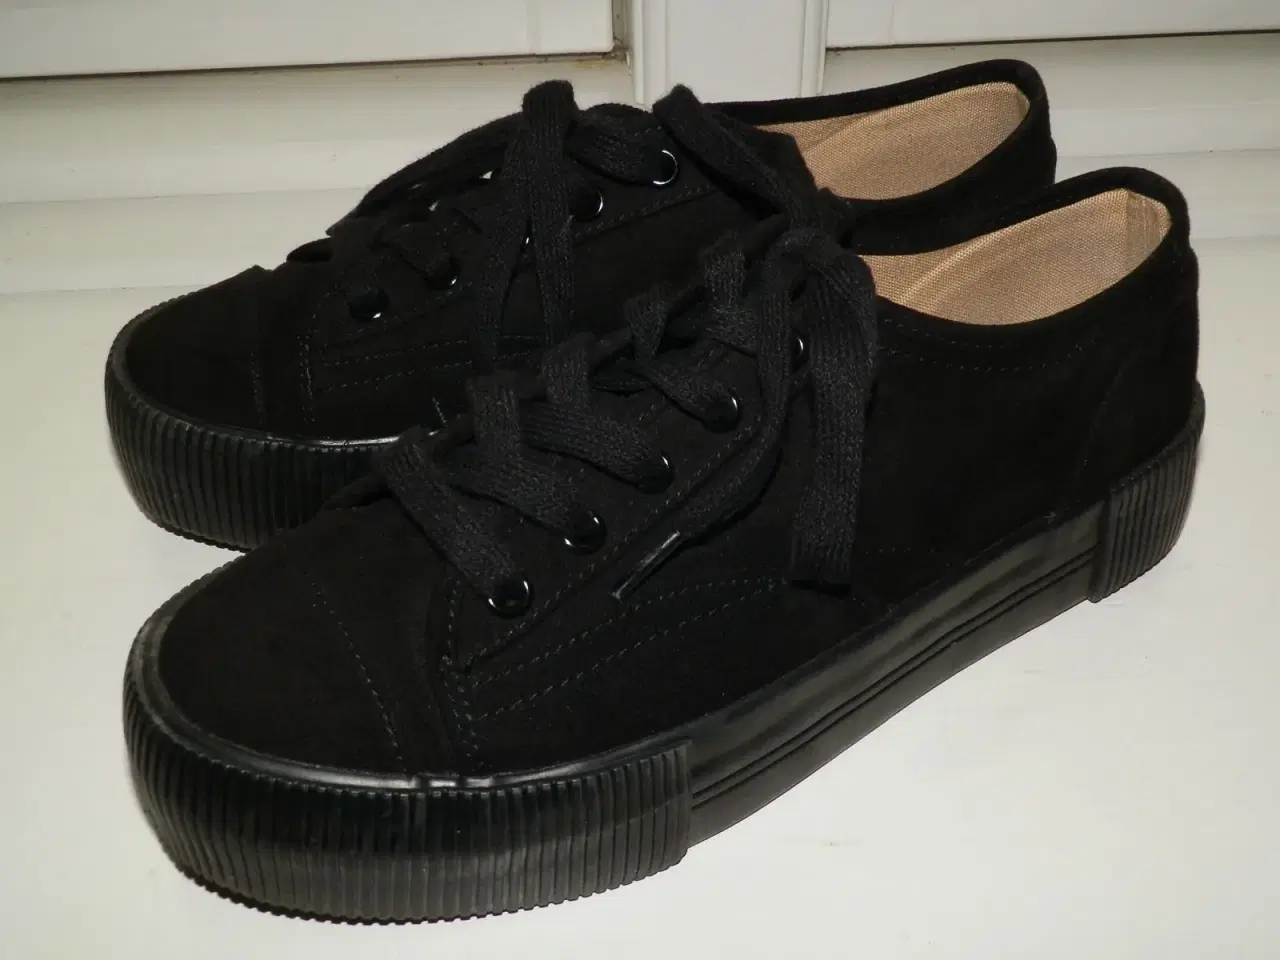 Billede 3 - Nye sorte og meget fede sneakers!